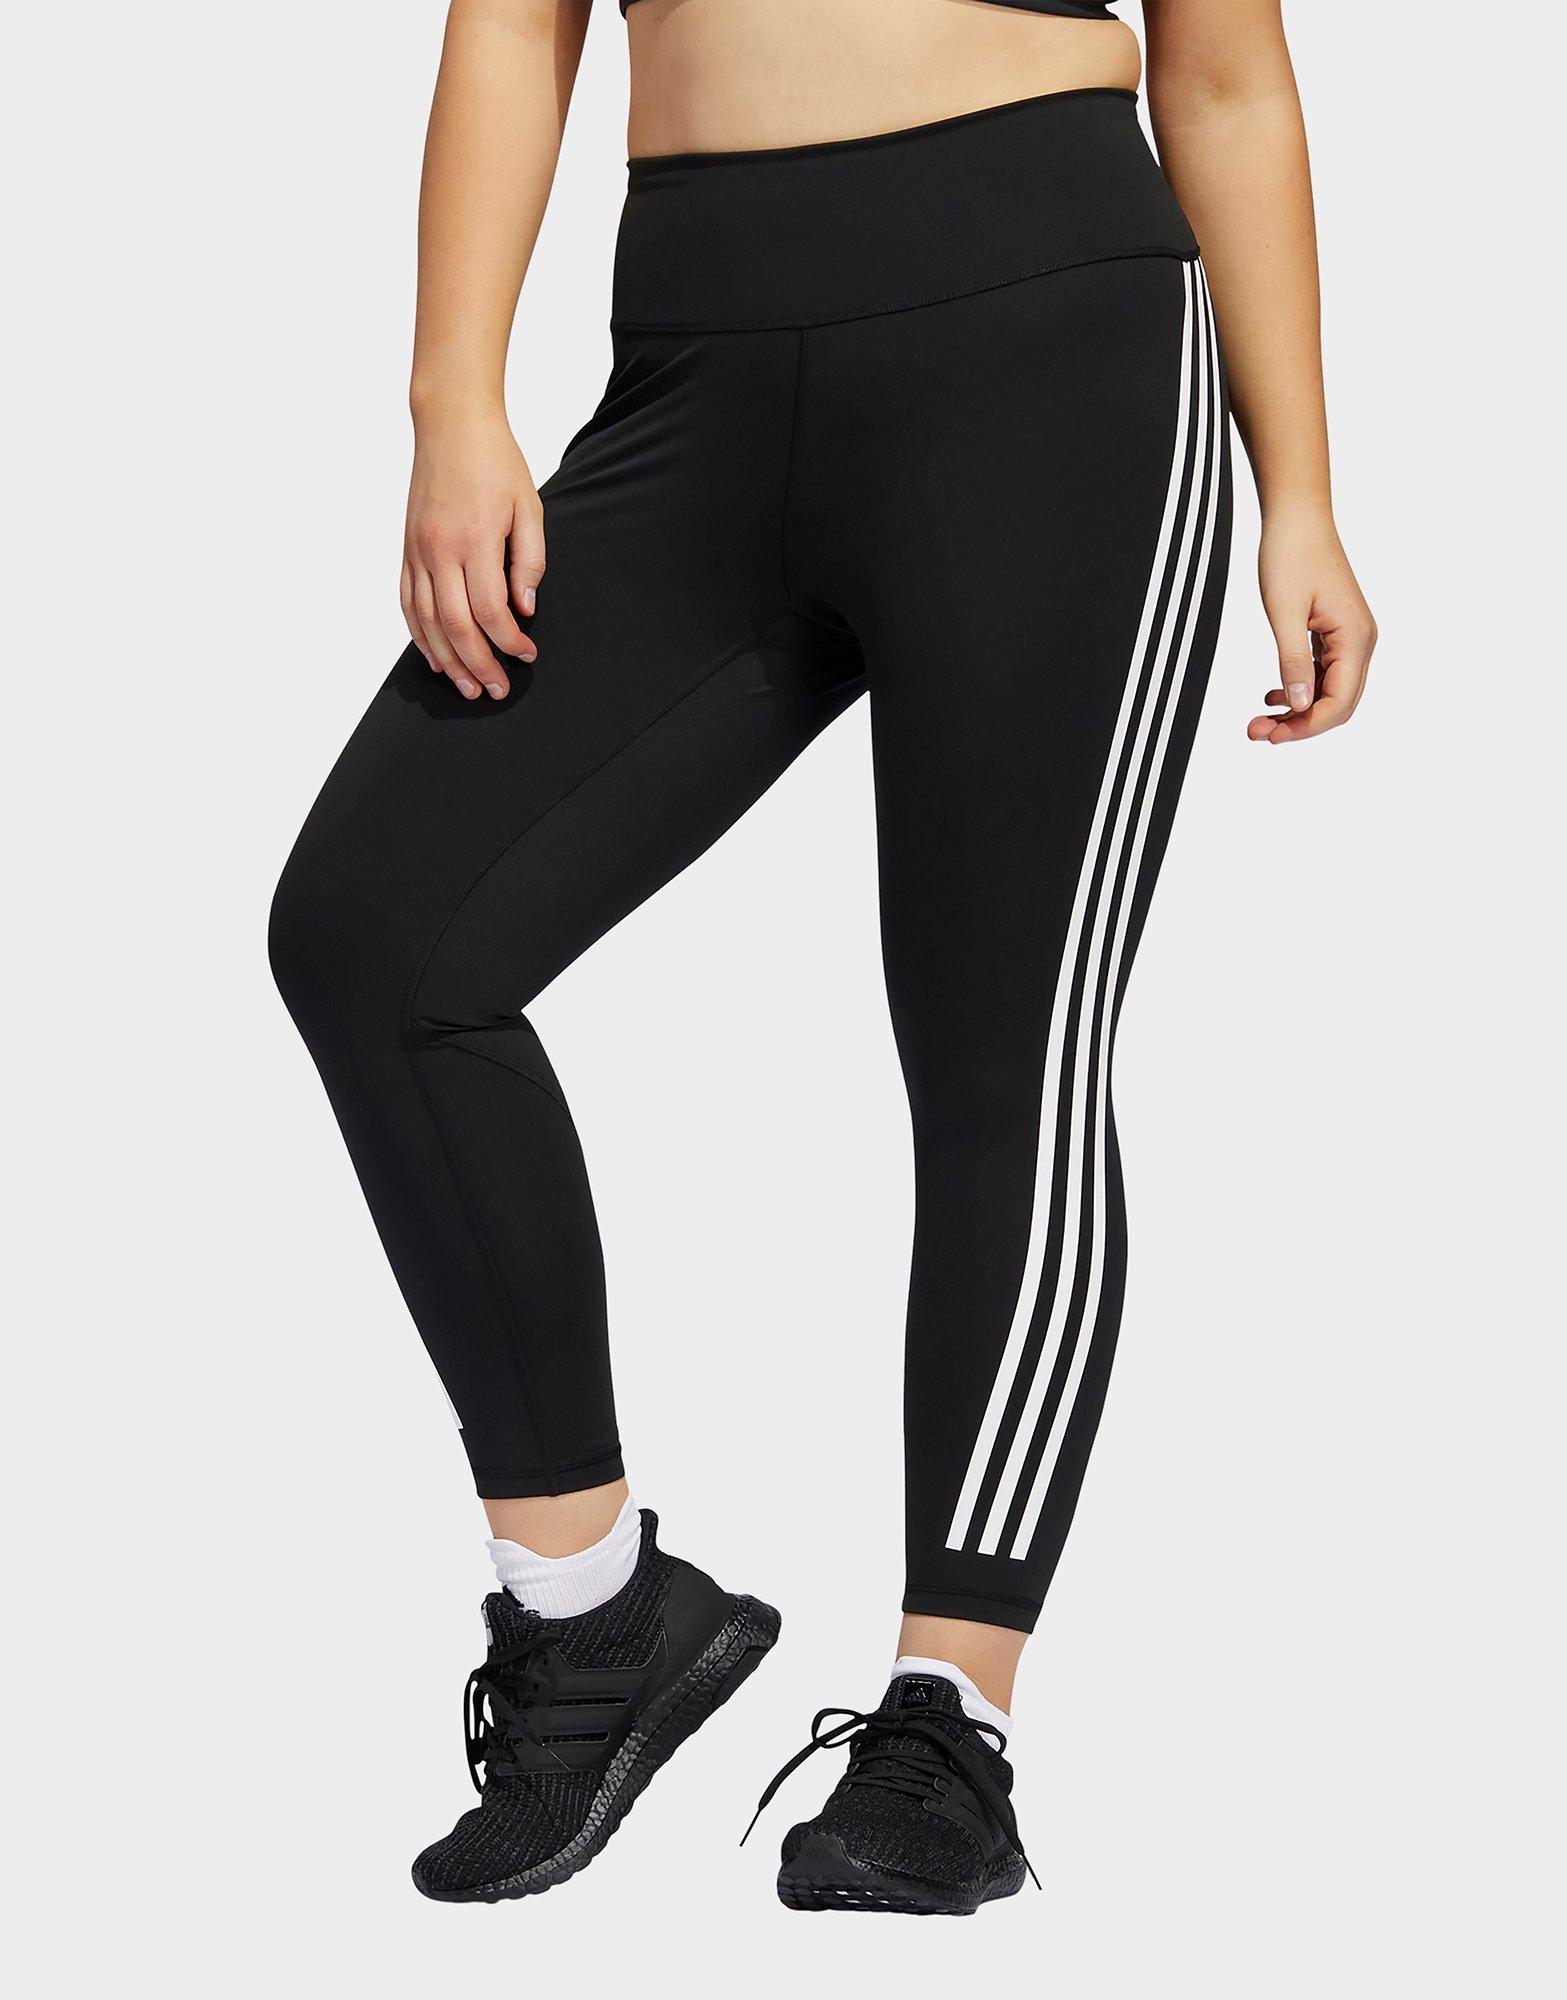 adidas,Womens,3-Stripes 7/8 Tights,Black/White,X-Small 